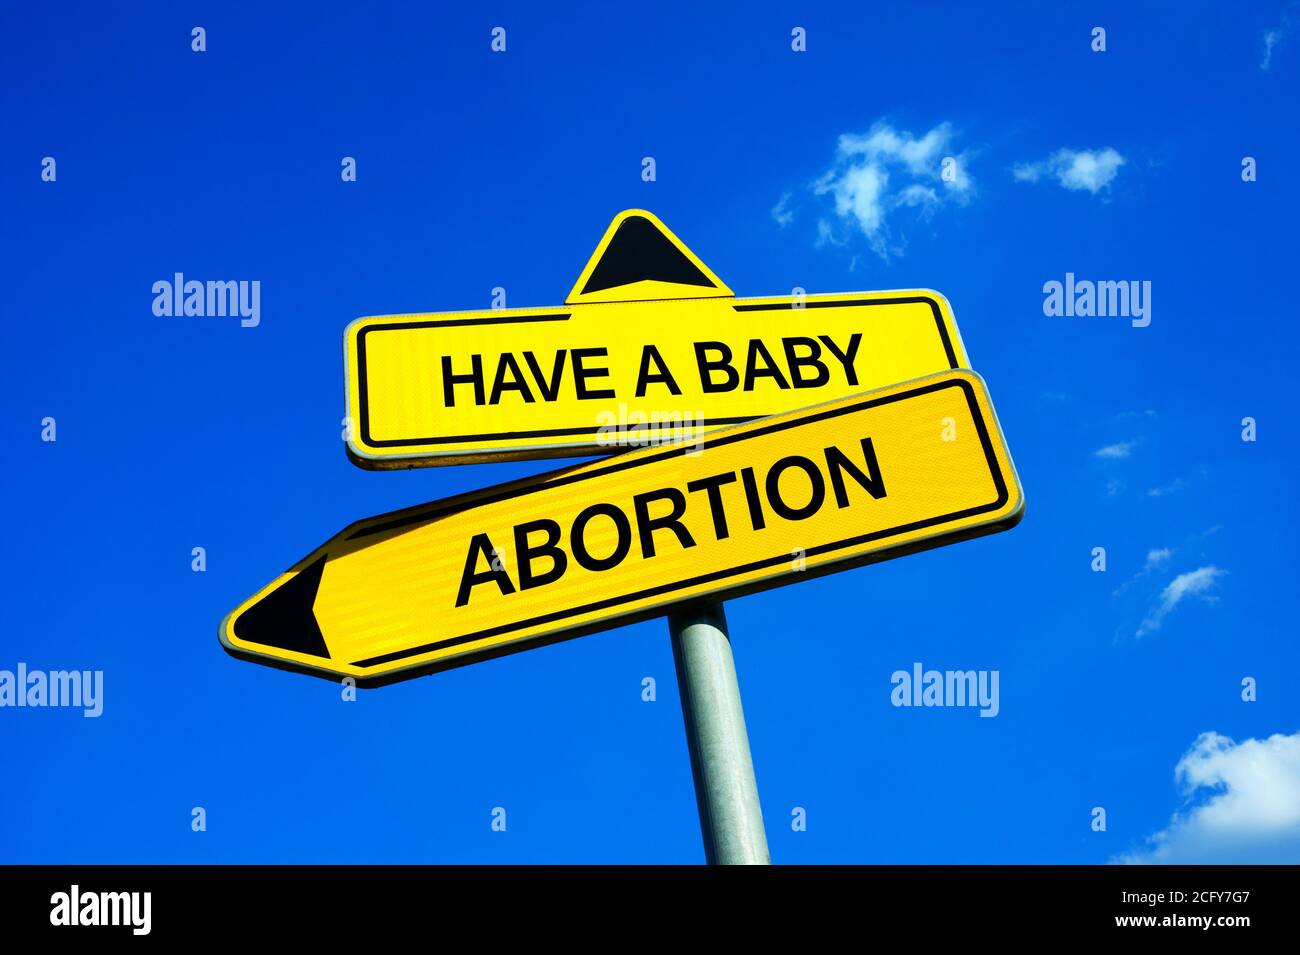 Abbia un bambino o aborto - segnale di traffico con due opzioni - madre e dilemma di uccidere il feto a causa di gravidanza indesiderata o non intenzionale Foto Stock